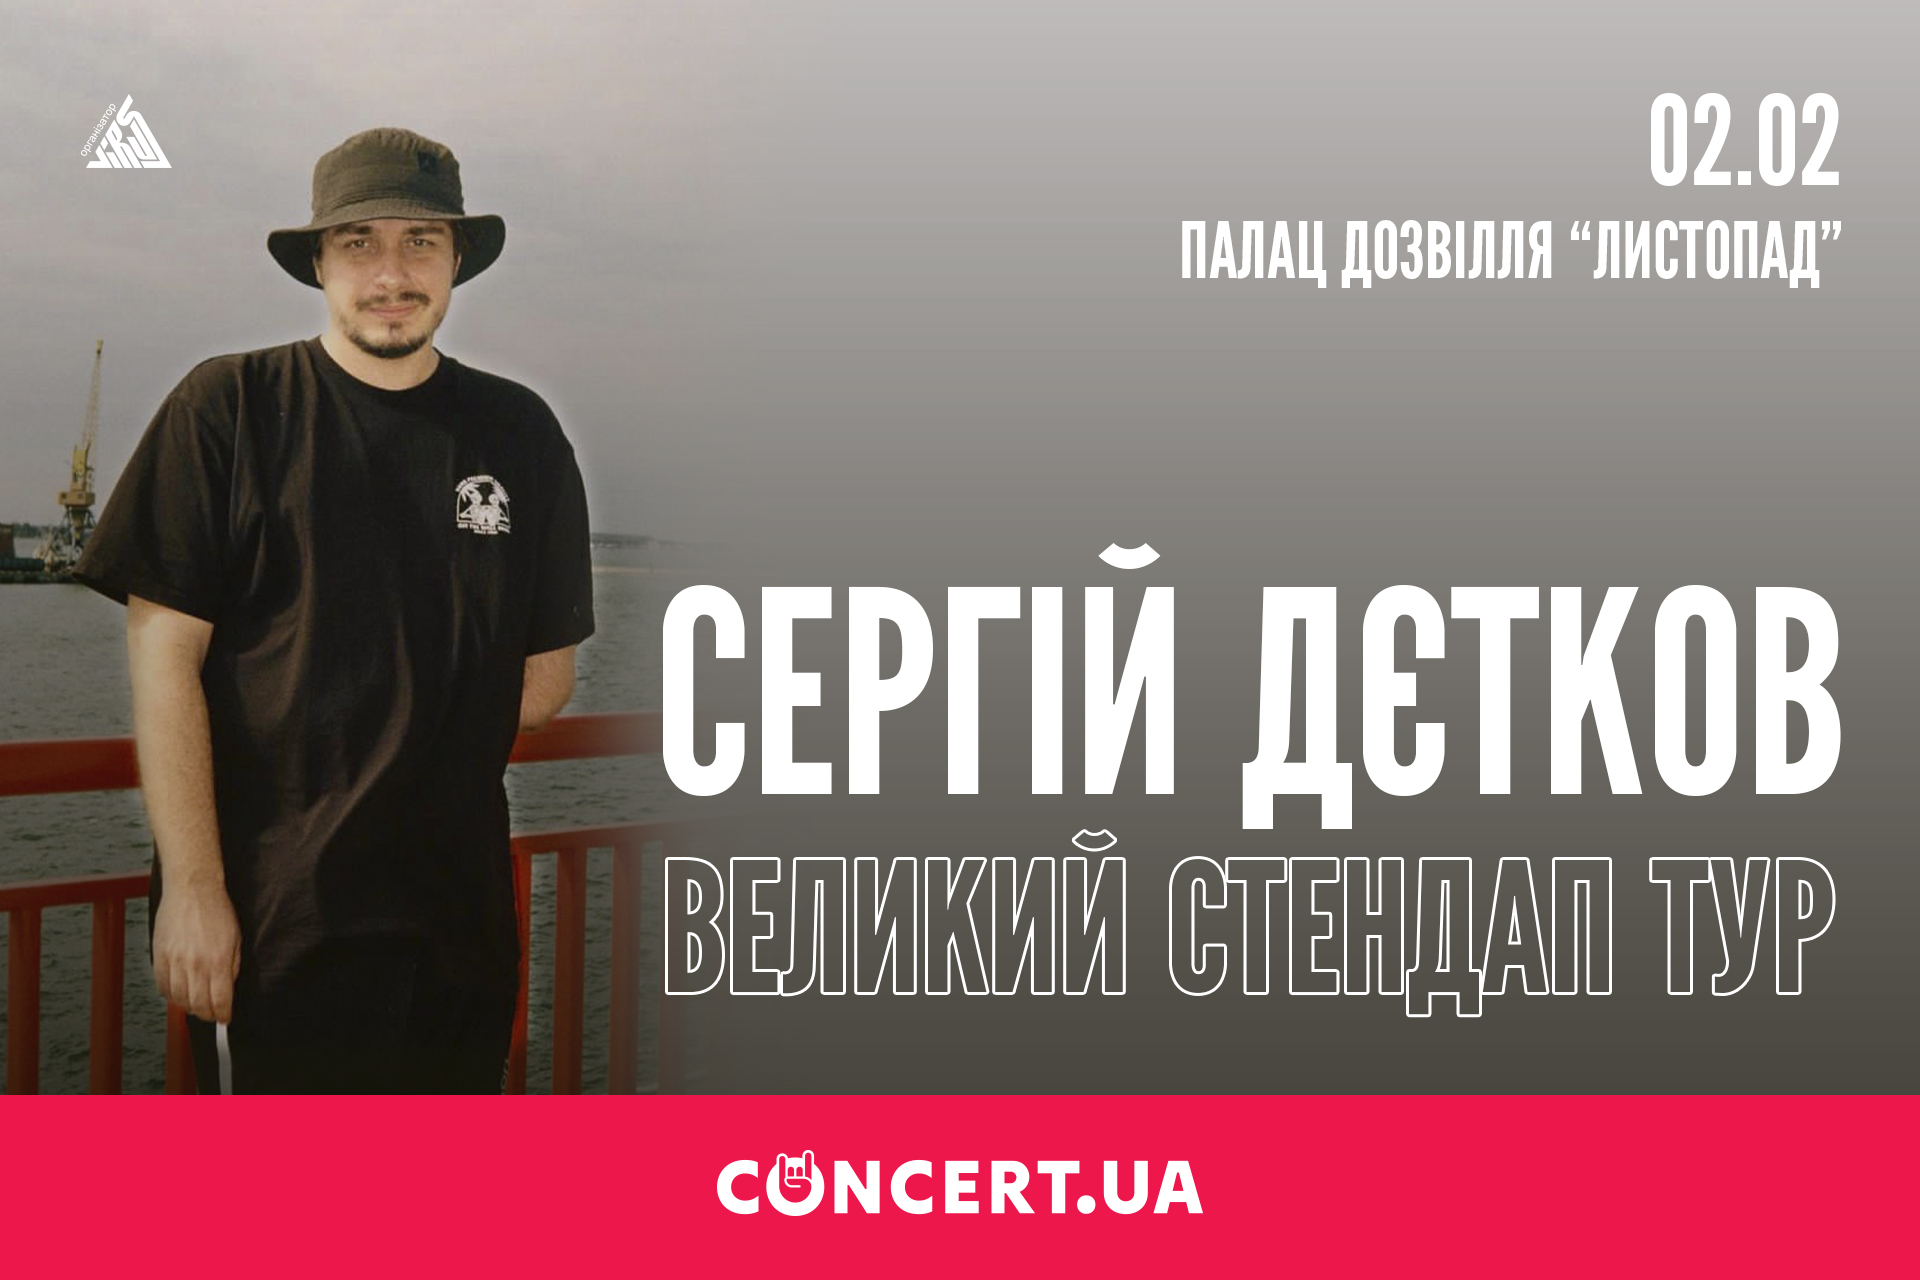 Популярный комик Сергей Детков в рамках долгожданного стендап-тура по Украине выступит в Полтаве